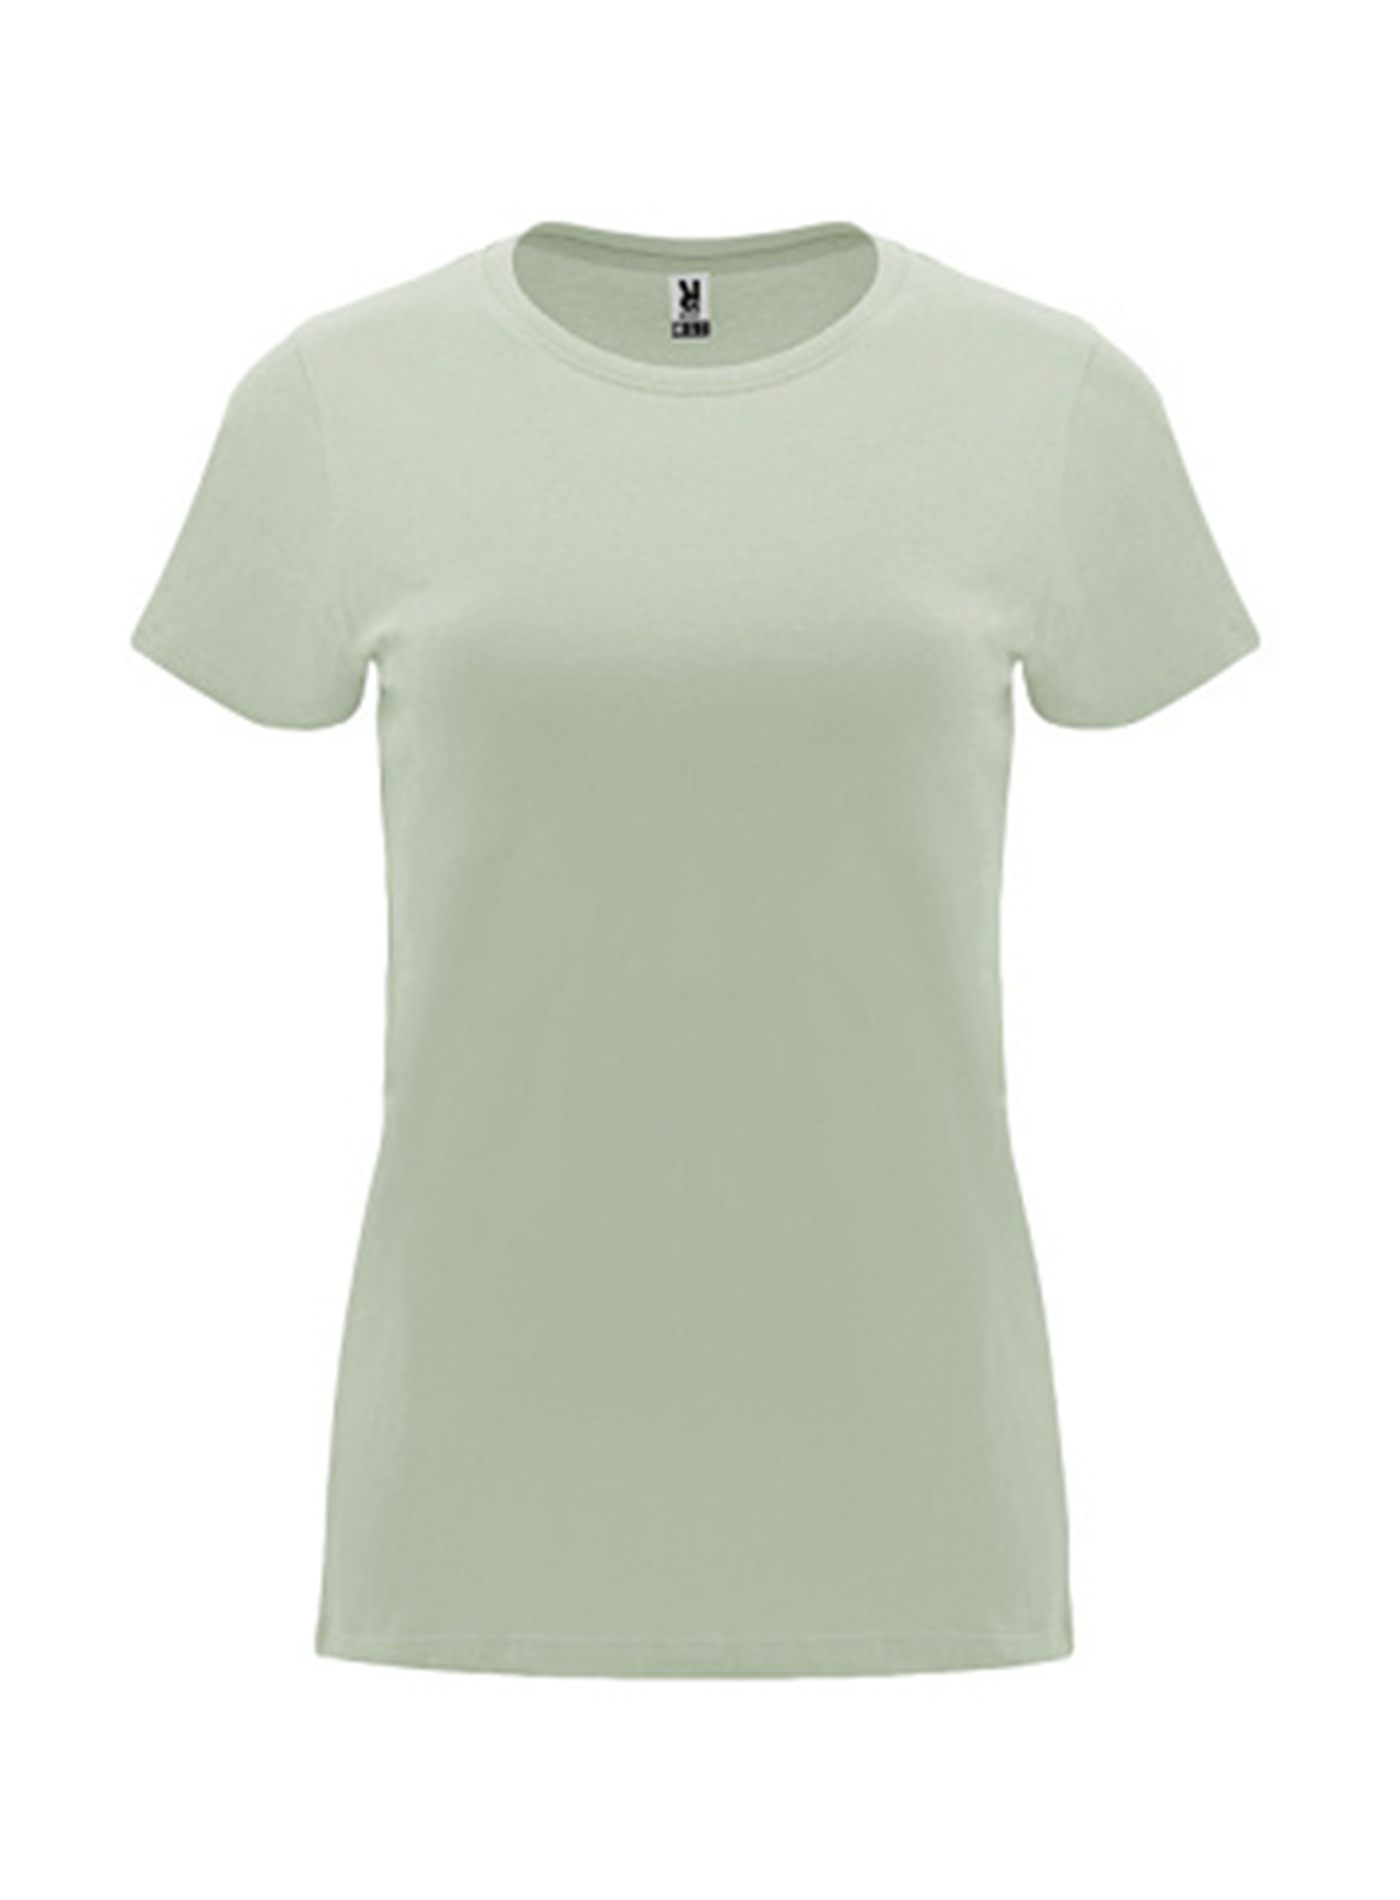 Dámské tričko Roly Capri - Jemně zelená XL